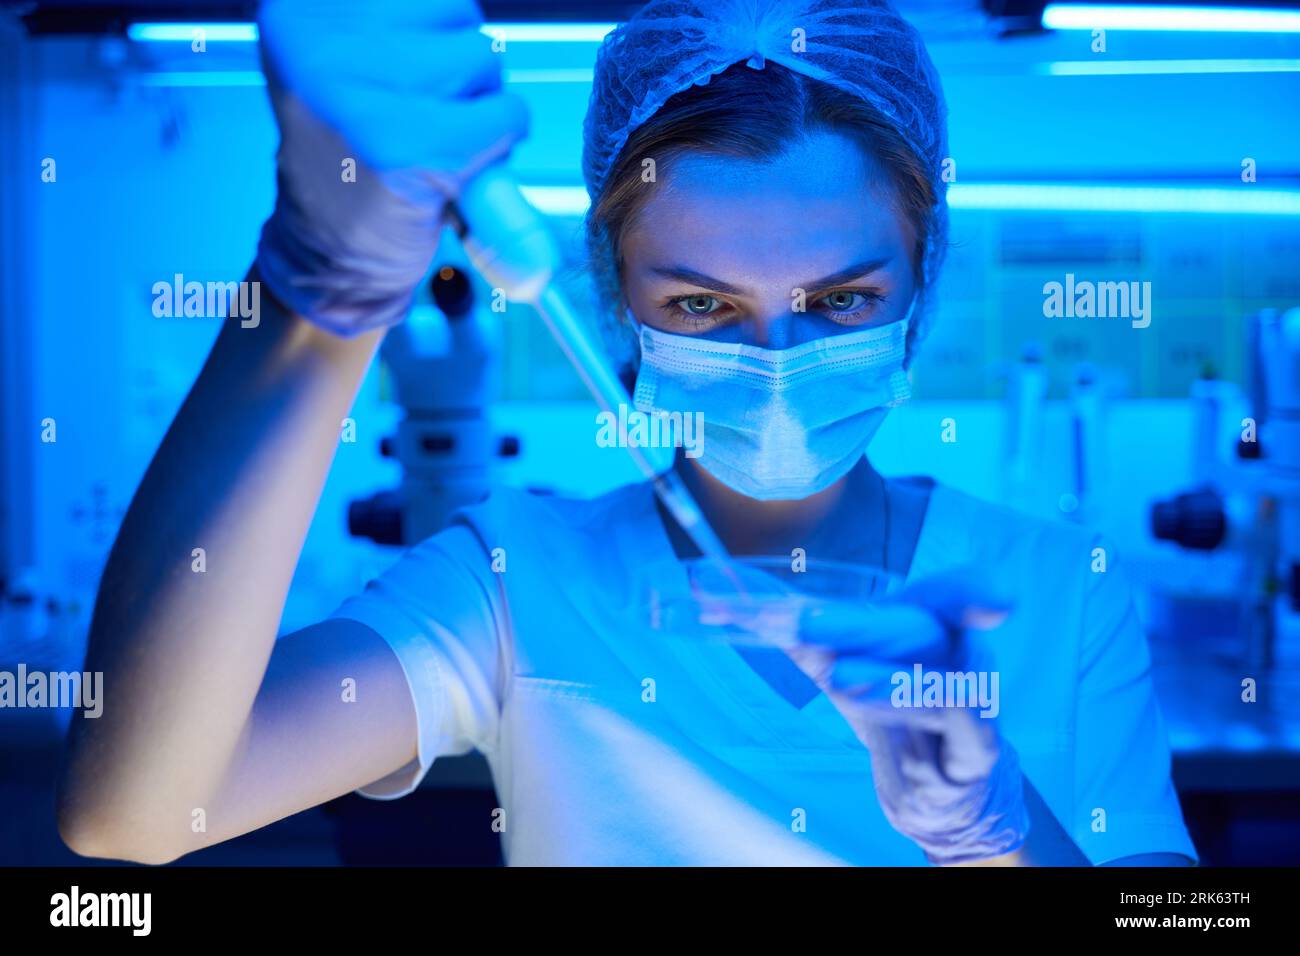 L'embriologo in una maschera protettiva manipola il biomateriale Foto Stock